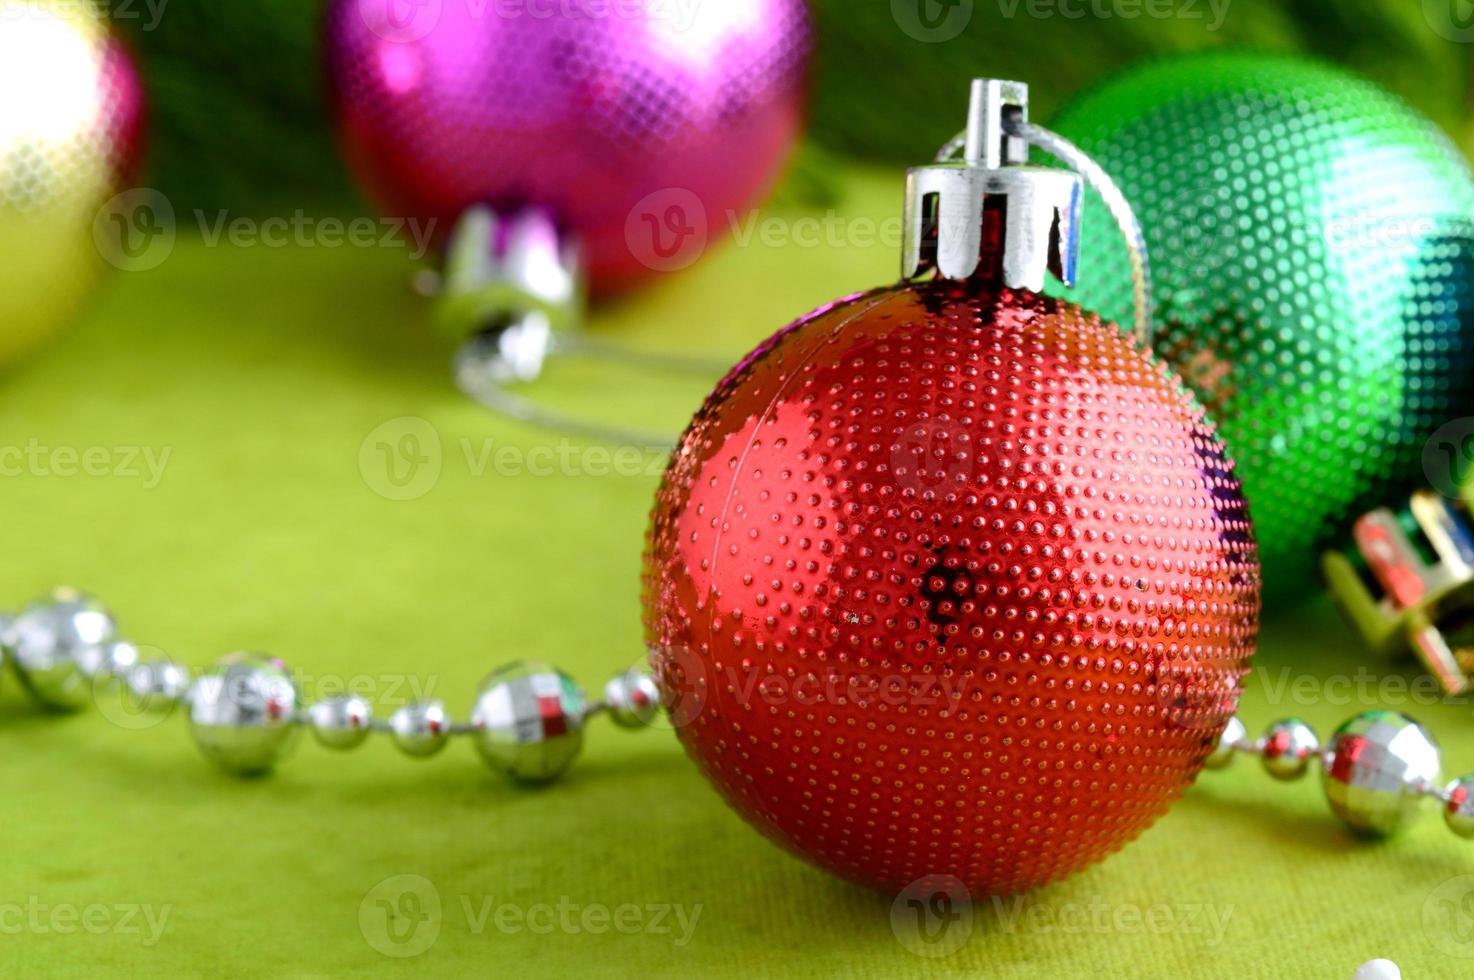 decoración navideña bola de navidad y adornos con la rama del árbol de navidad foto